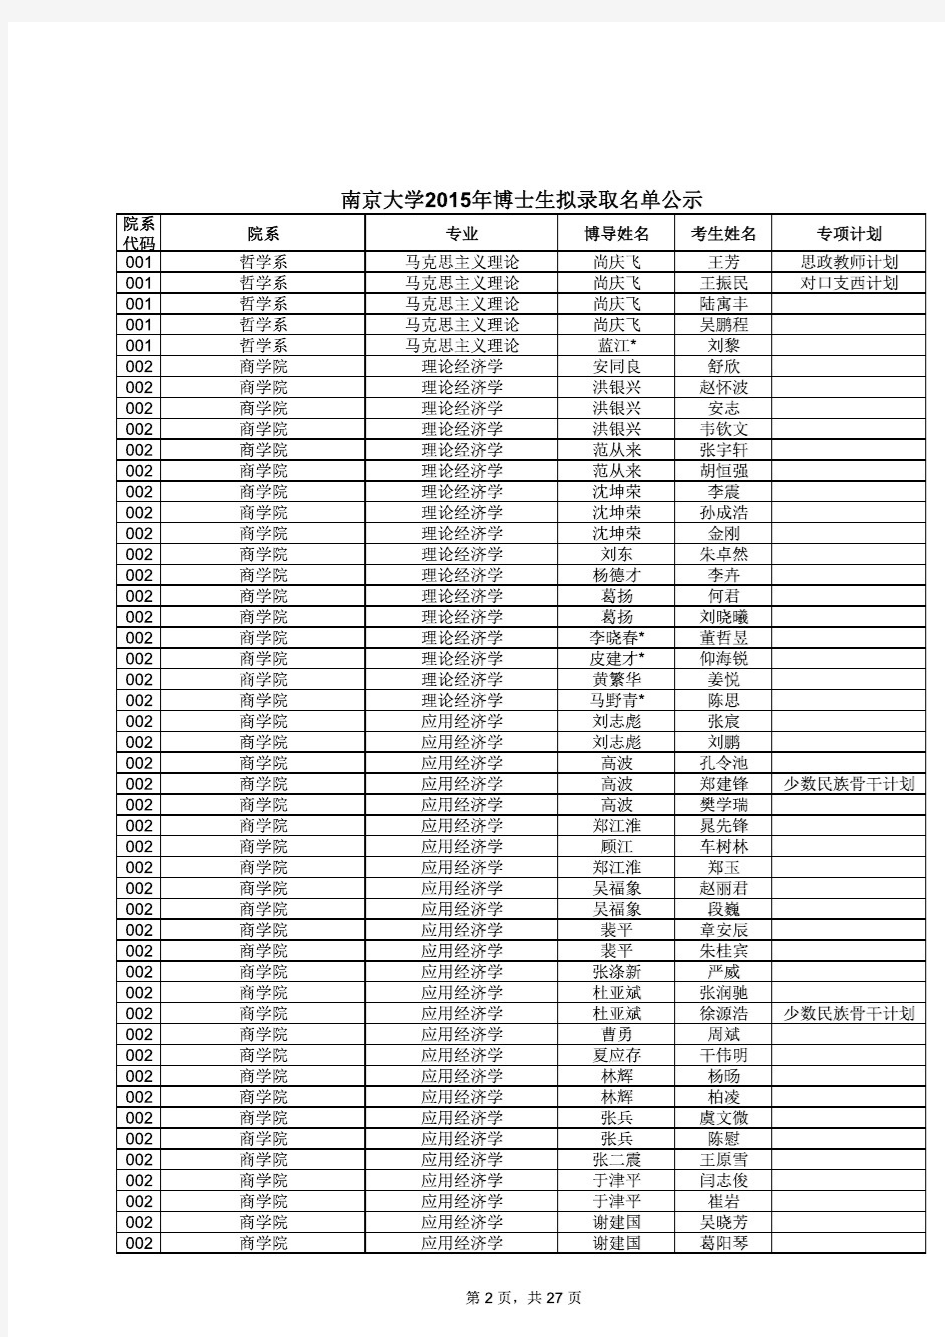 南京大学2015年博士生拟录取名单公示